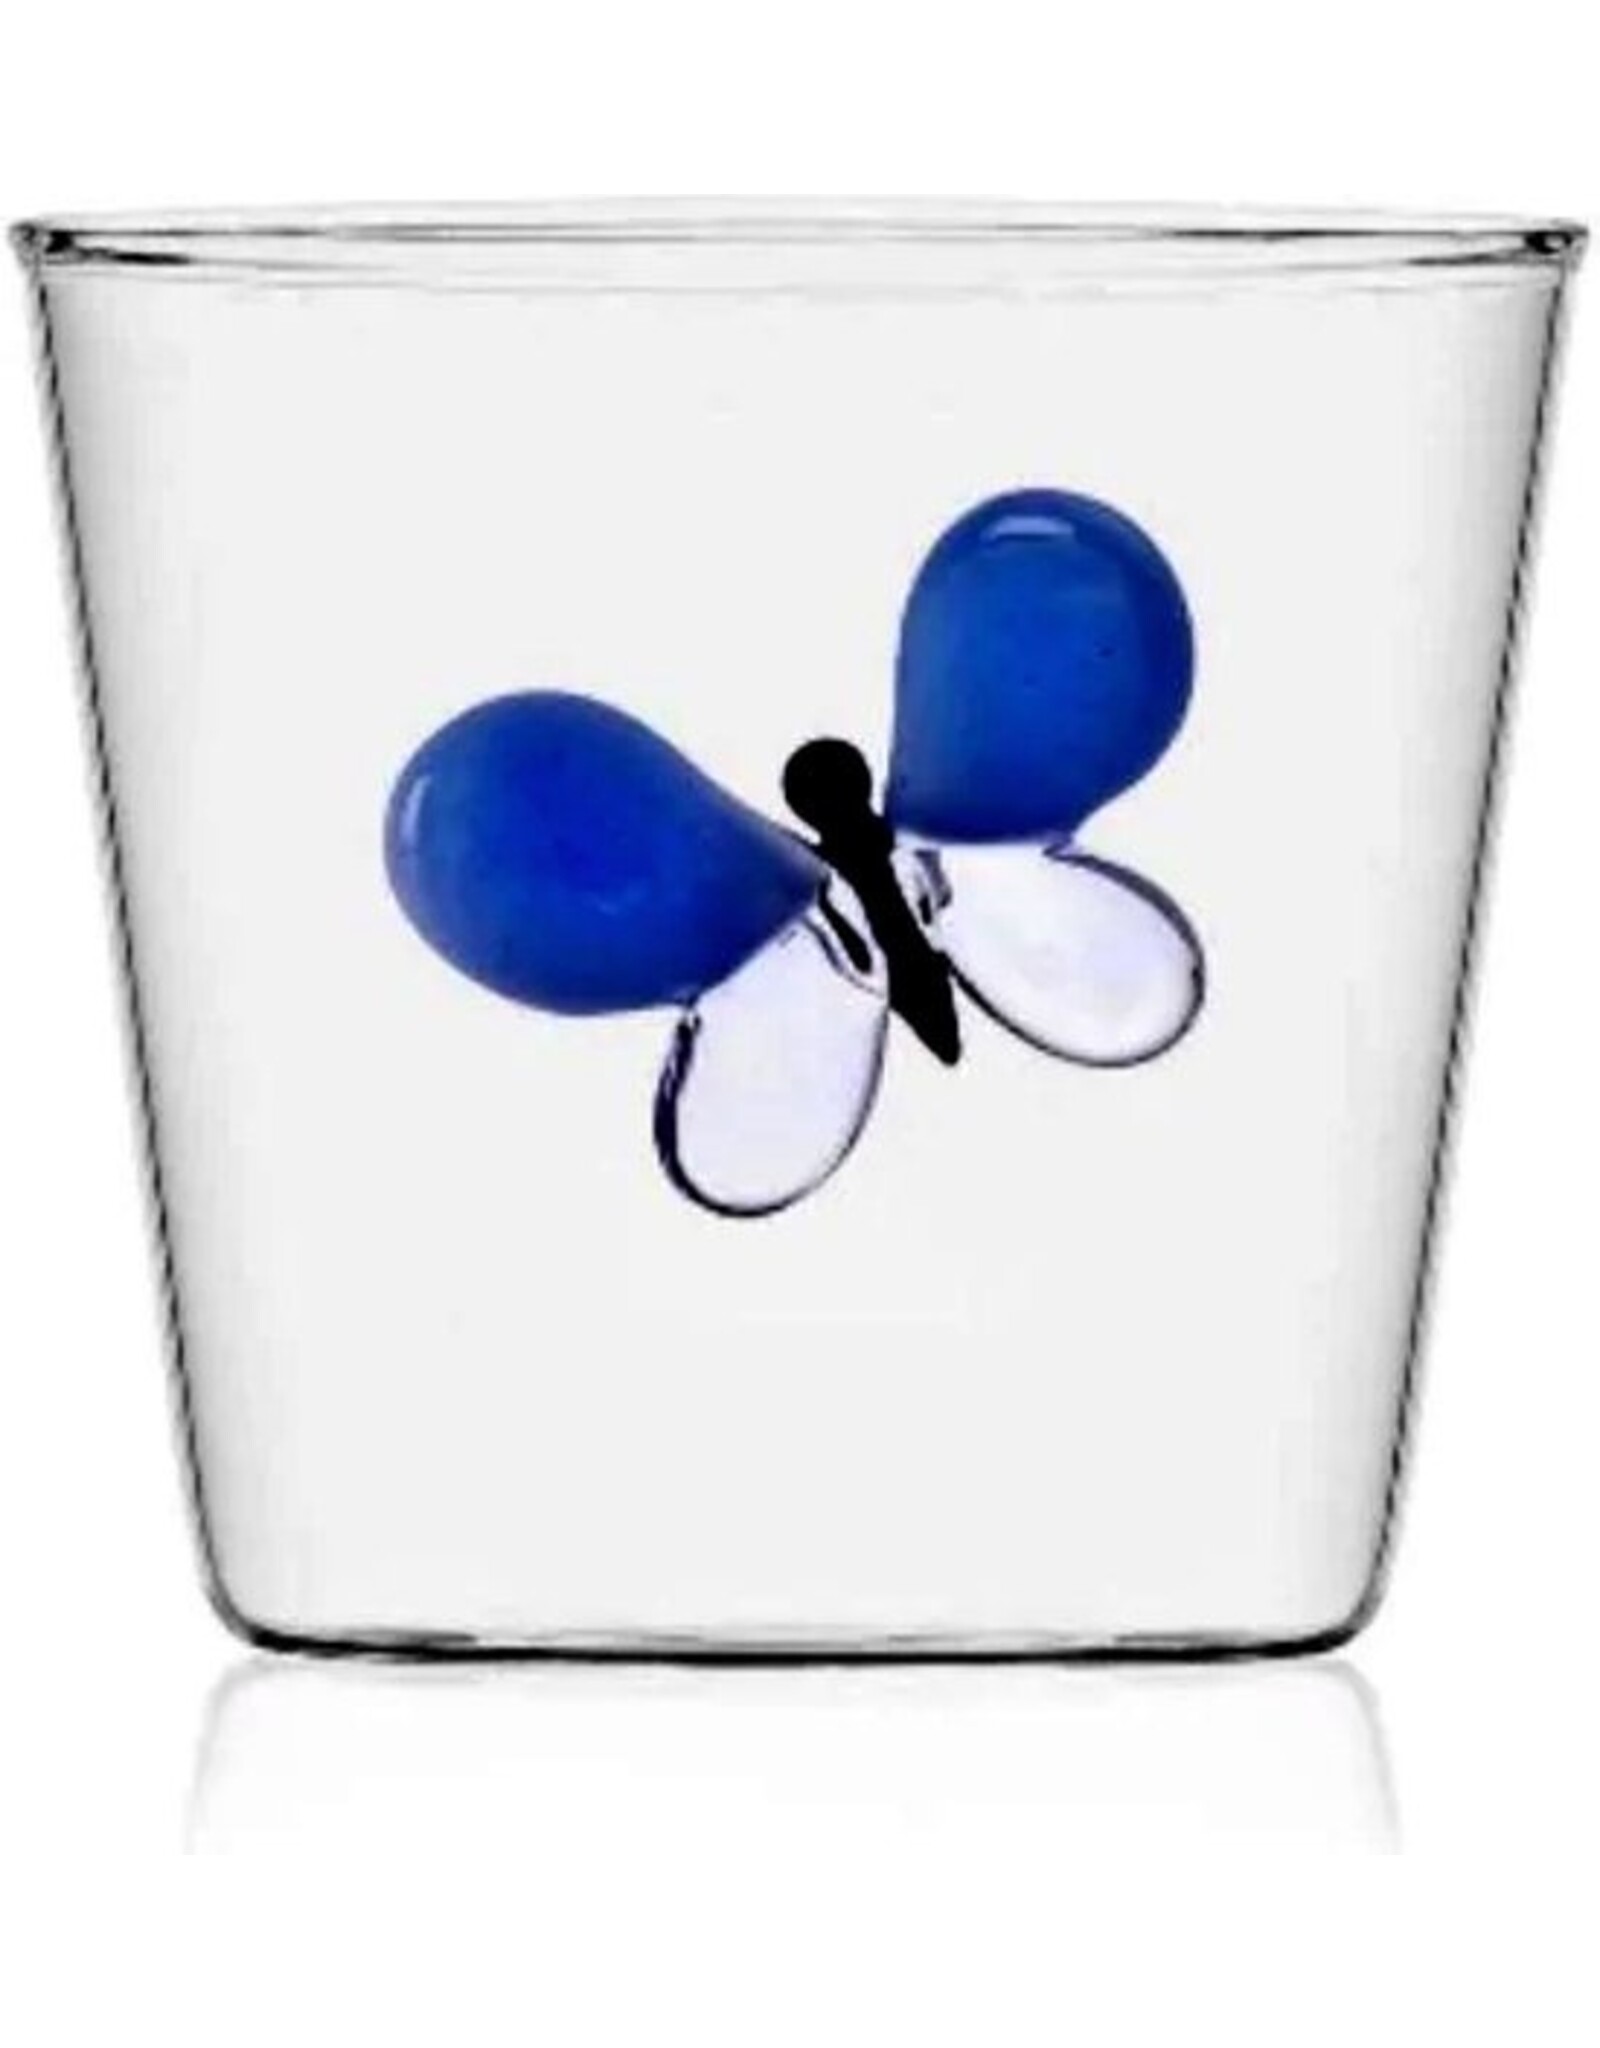 Ichendorf Milano Waterglas Vlinder Blauw Garden Picnic